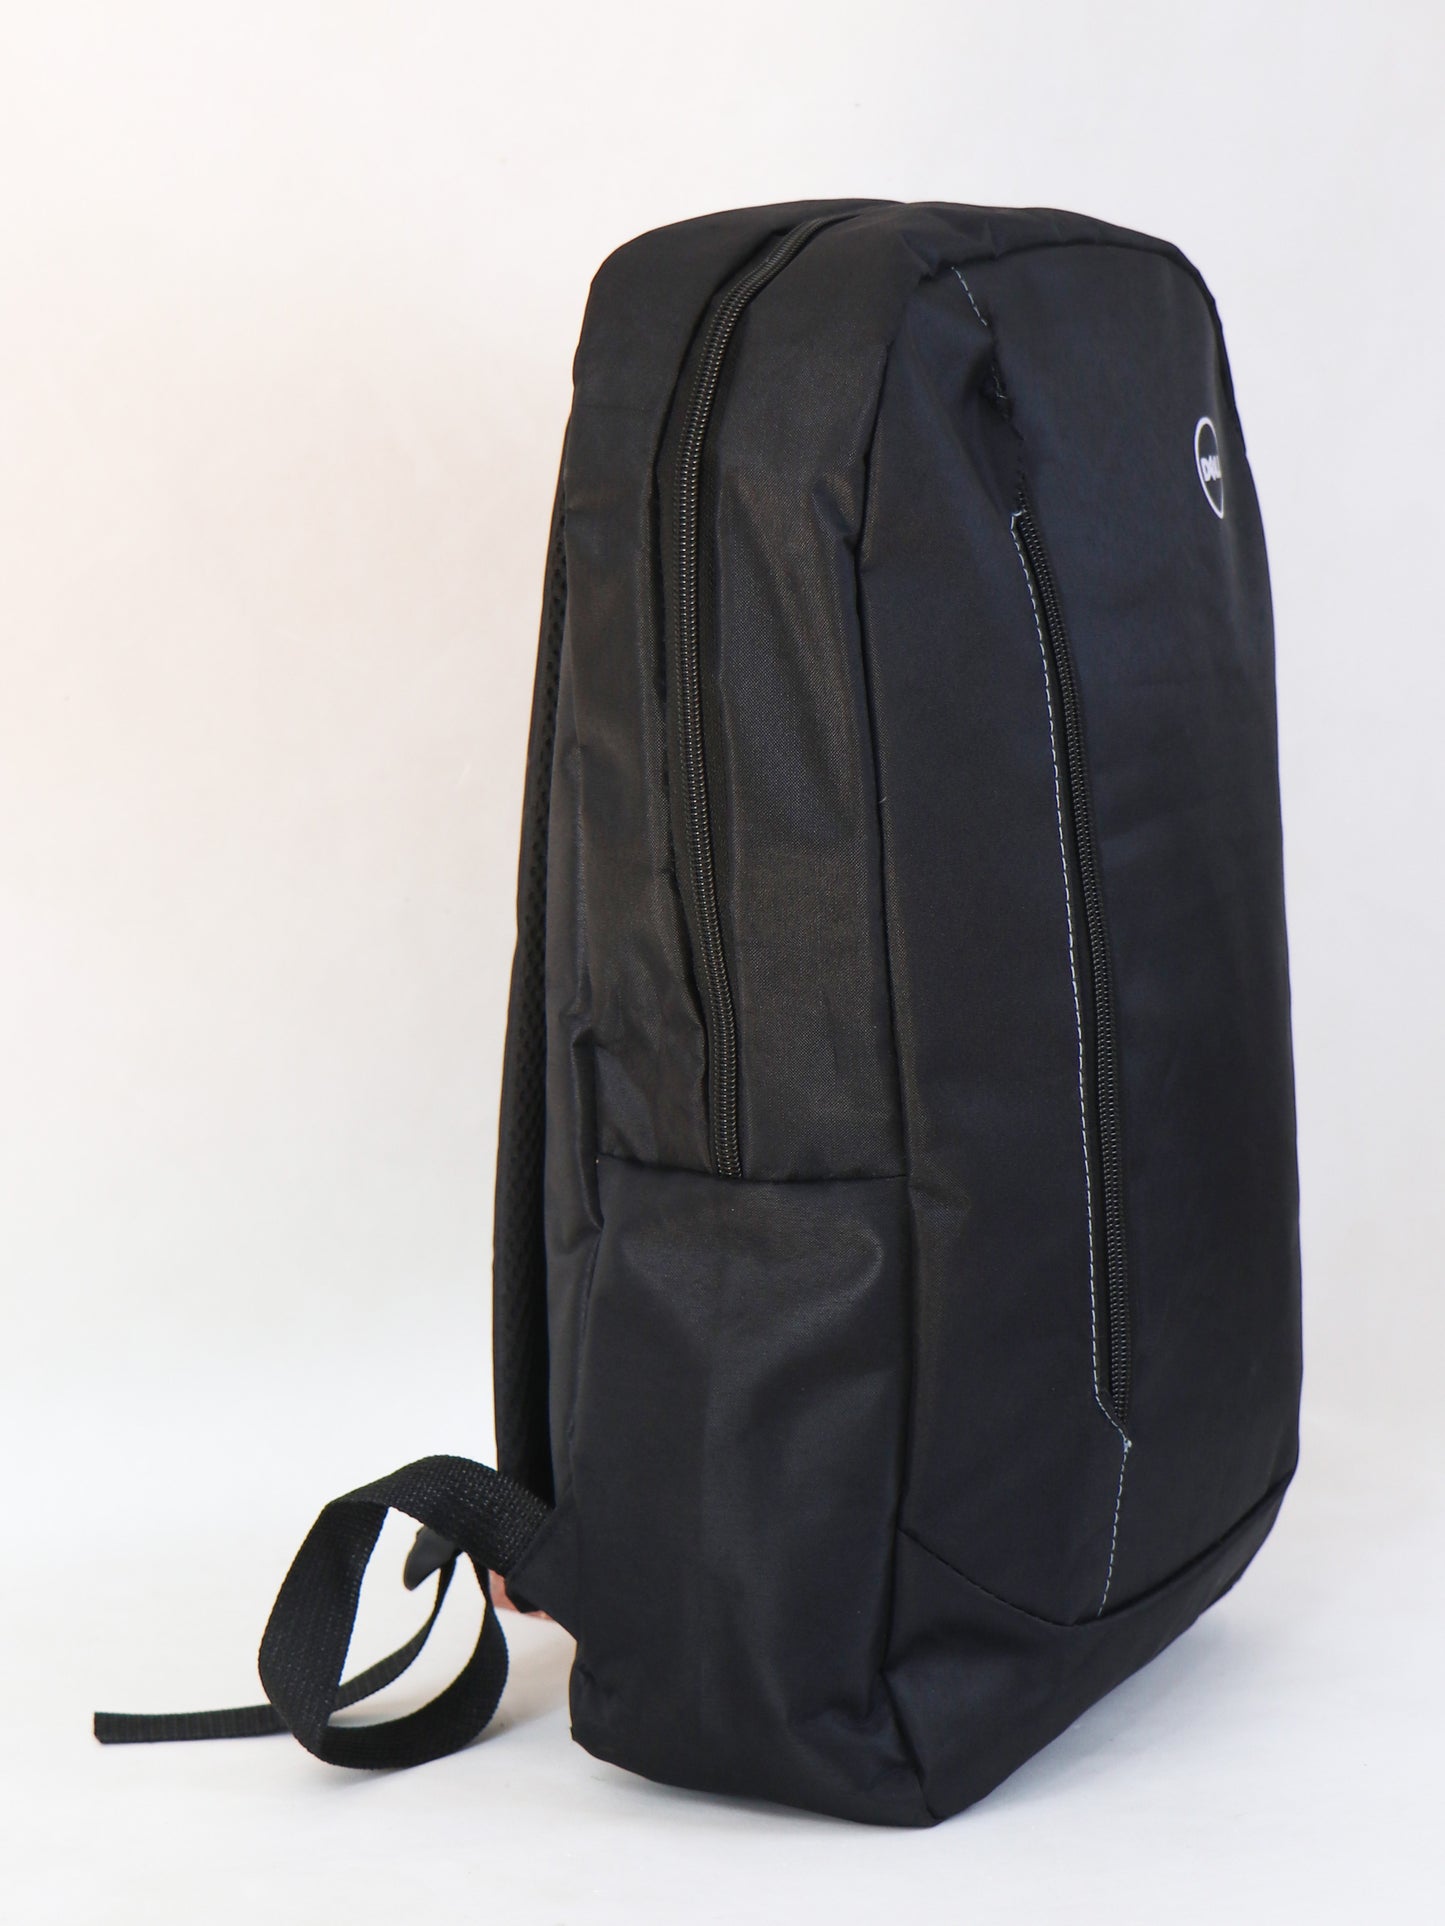 LB03 Dell Laptop Bag Value Backpack Black 01